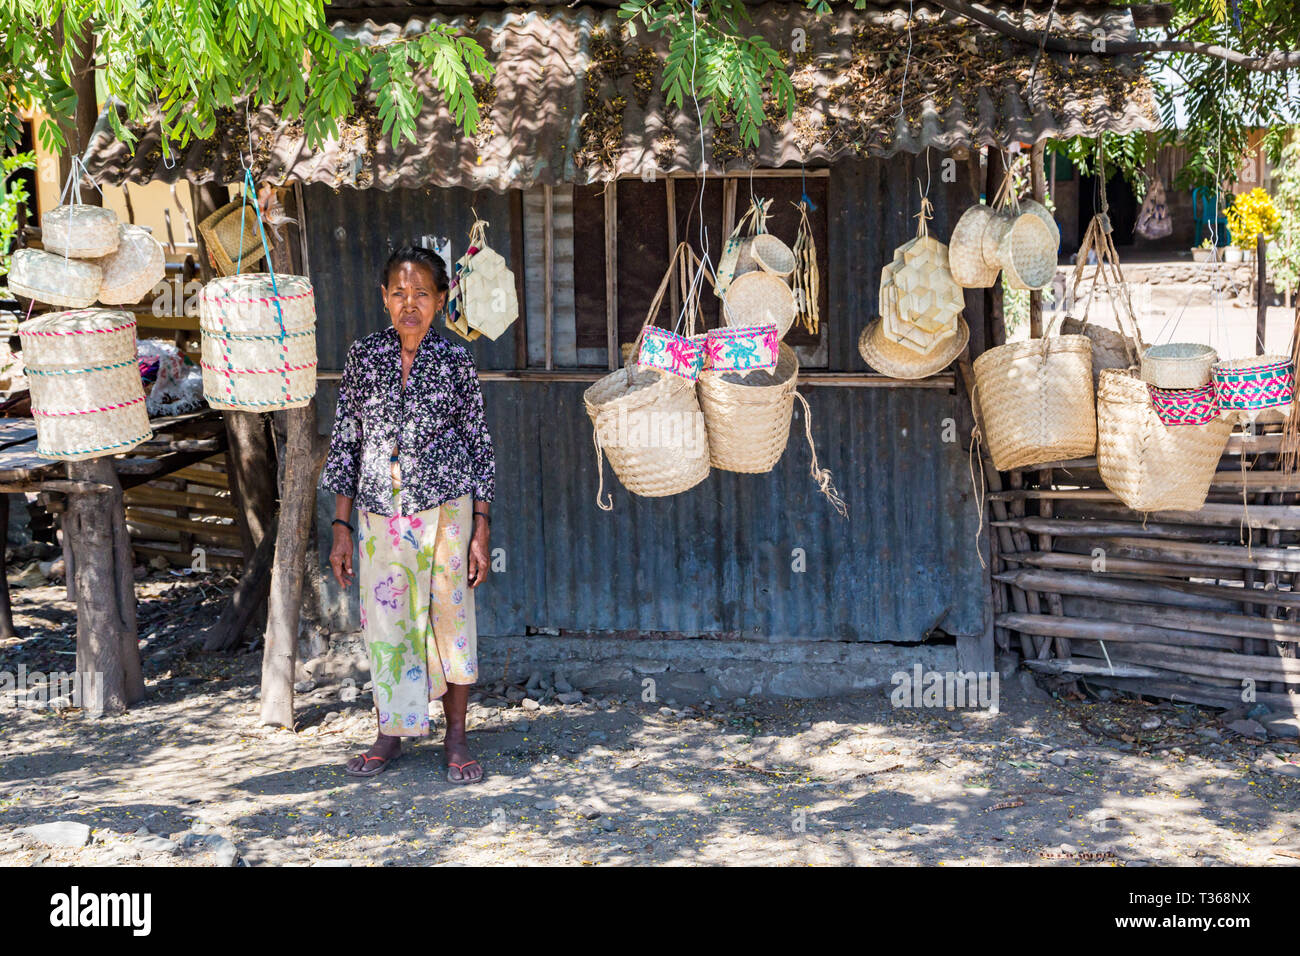 Dili, Timor Est - 11 Ago, 2015: anziani locali nativi di Timor orientale donna, street vending tradizionali canestri di vimini appesi a funi, in corrispondenza di una capanna di stagno u Foto Stock